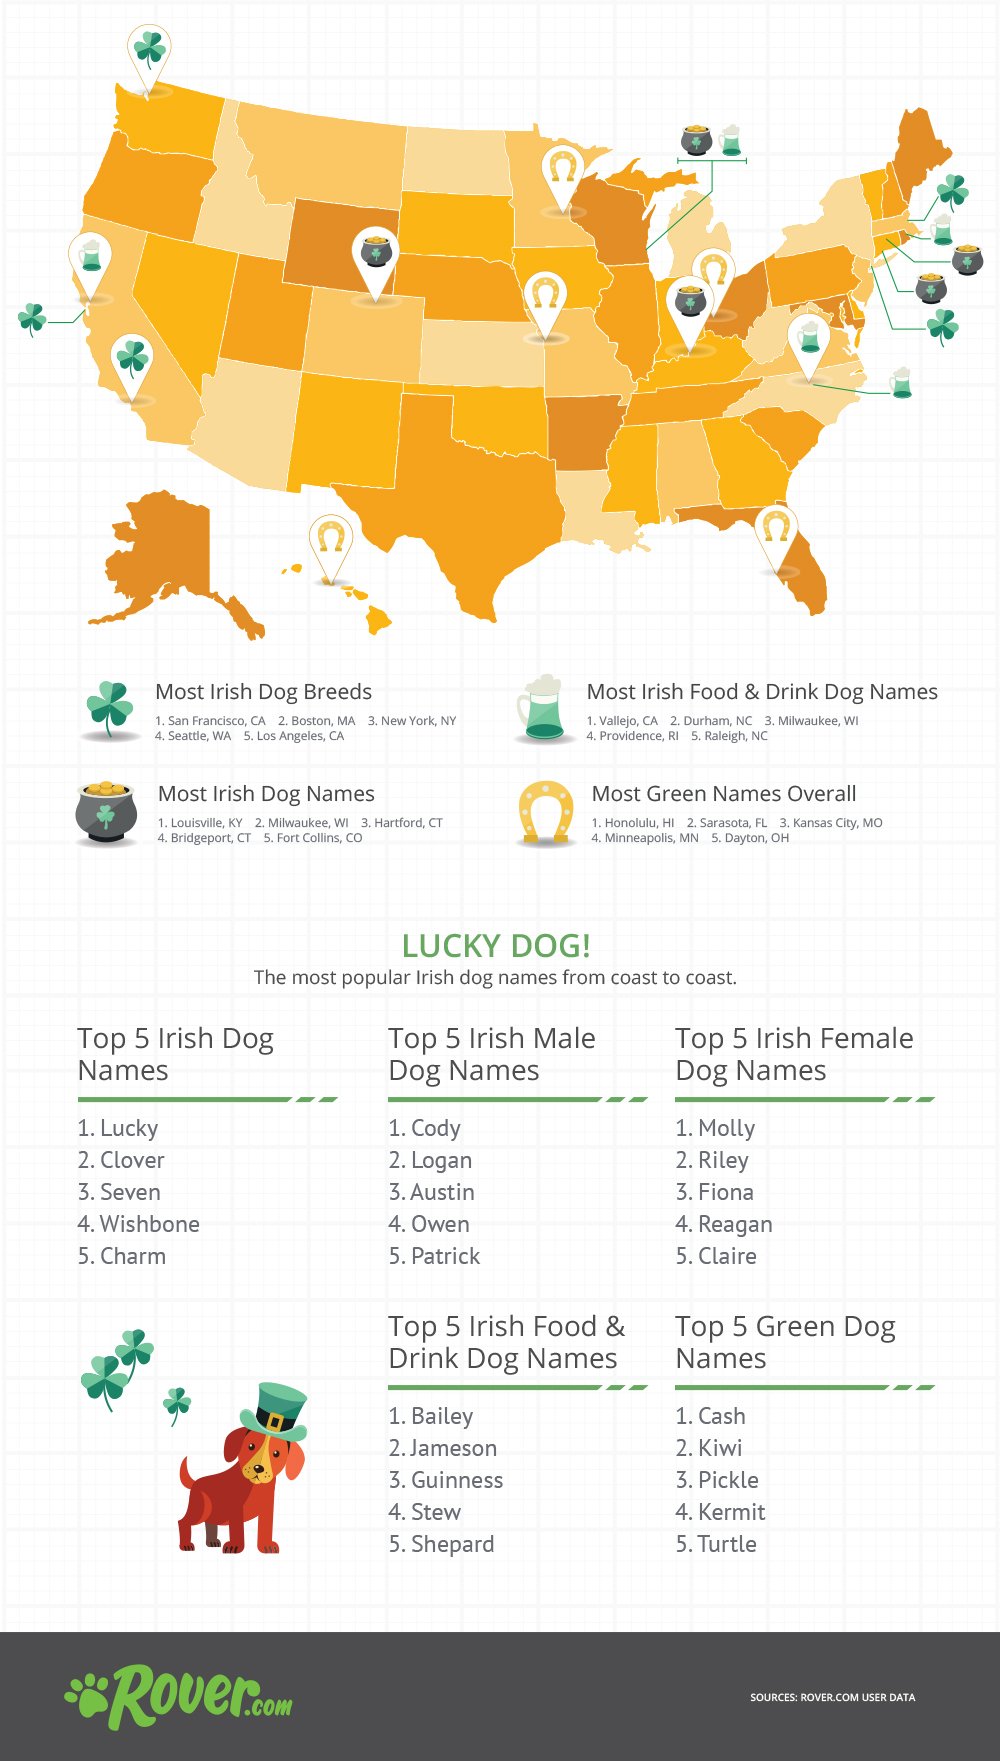 Irish Dog Names - St. Patrick's Day Infographic